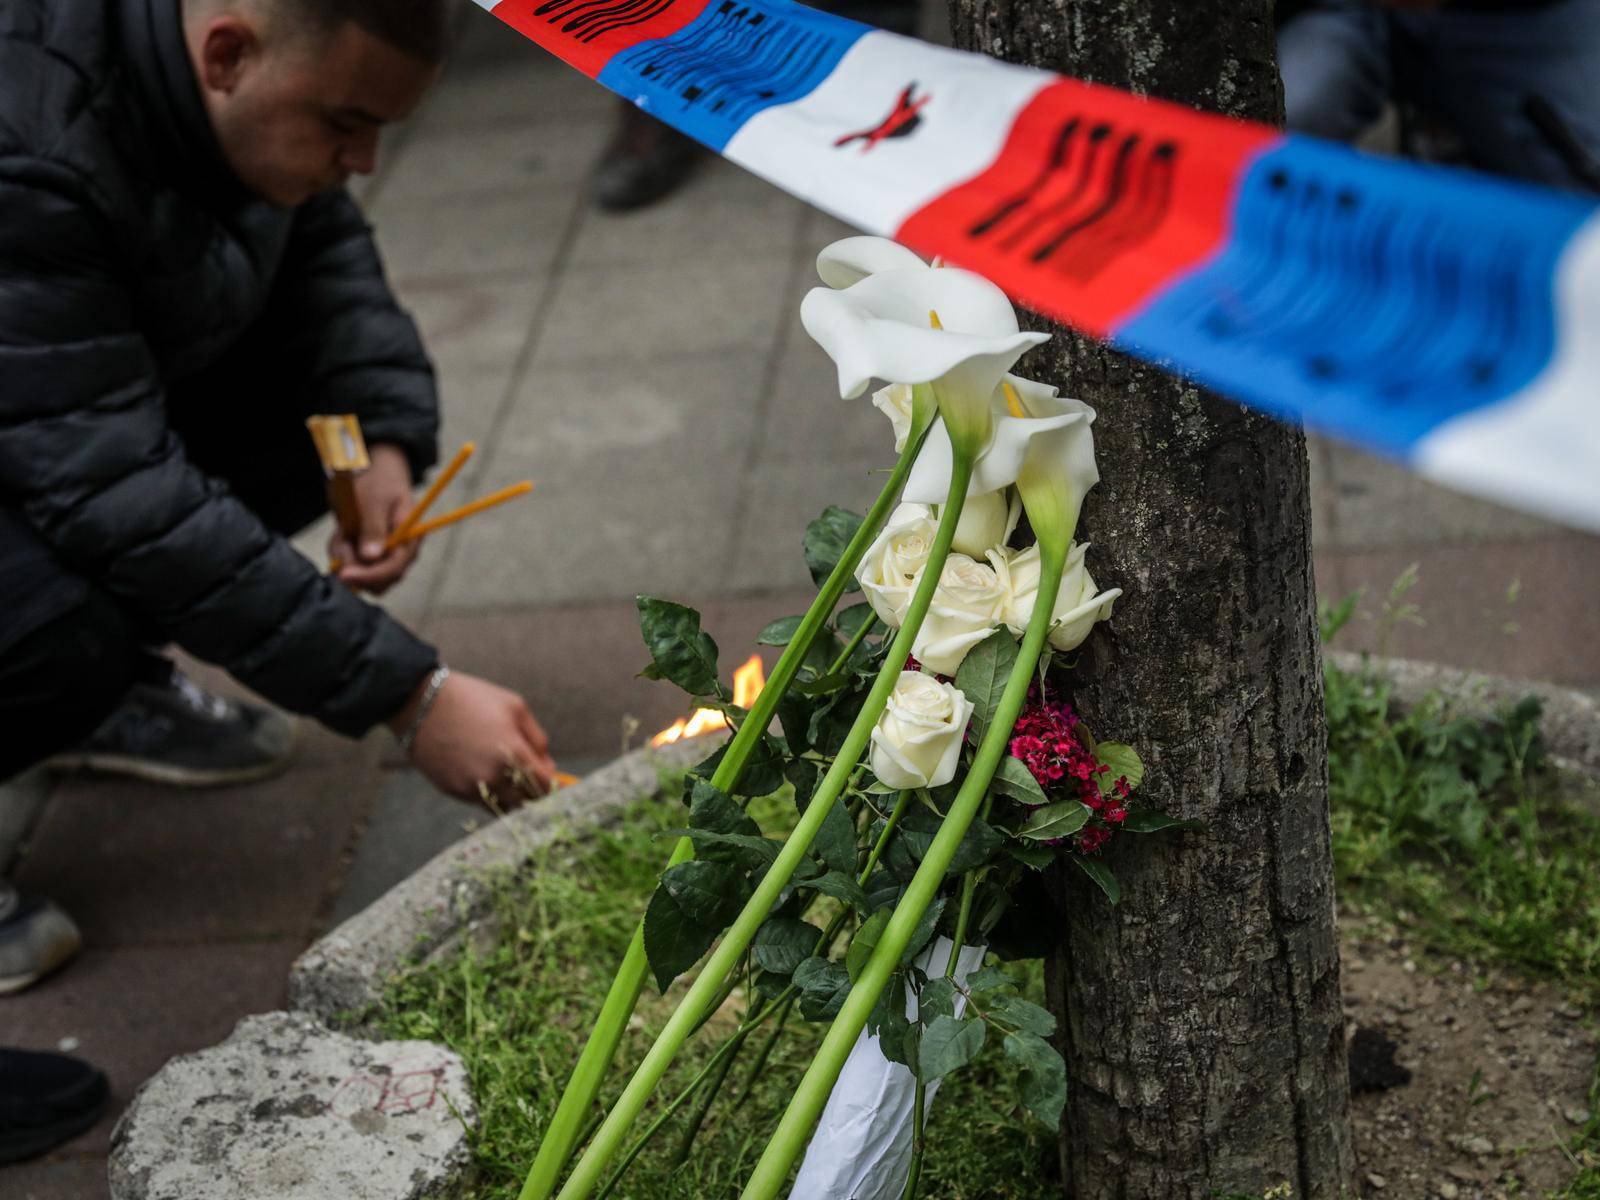 Beograd: Građani polažu cvijeće te pale svijeće ispred škole gdje je jučer učenik ubio devet osoba